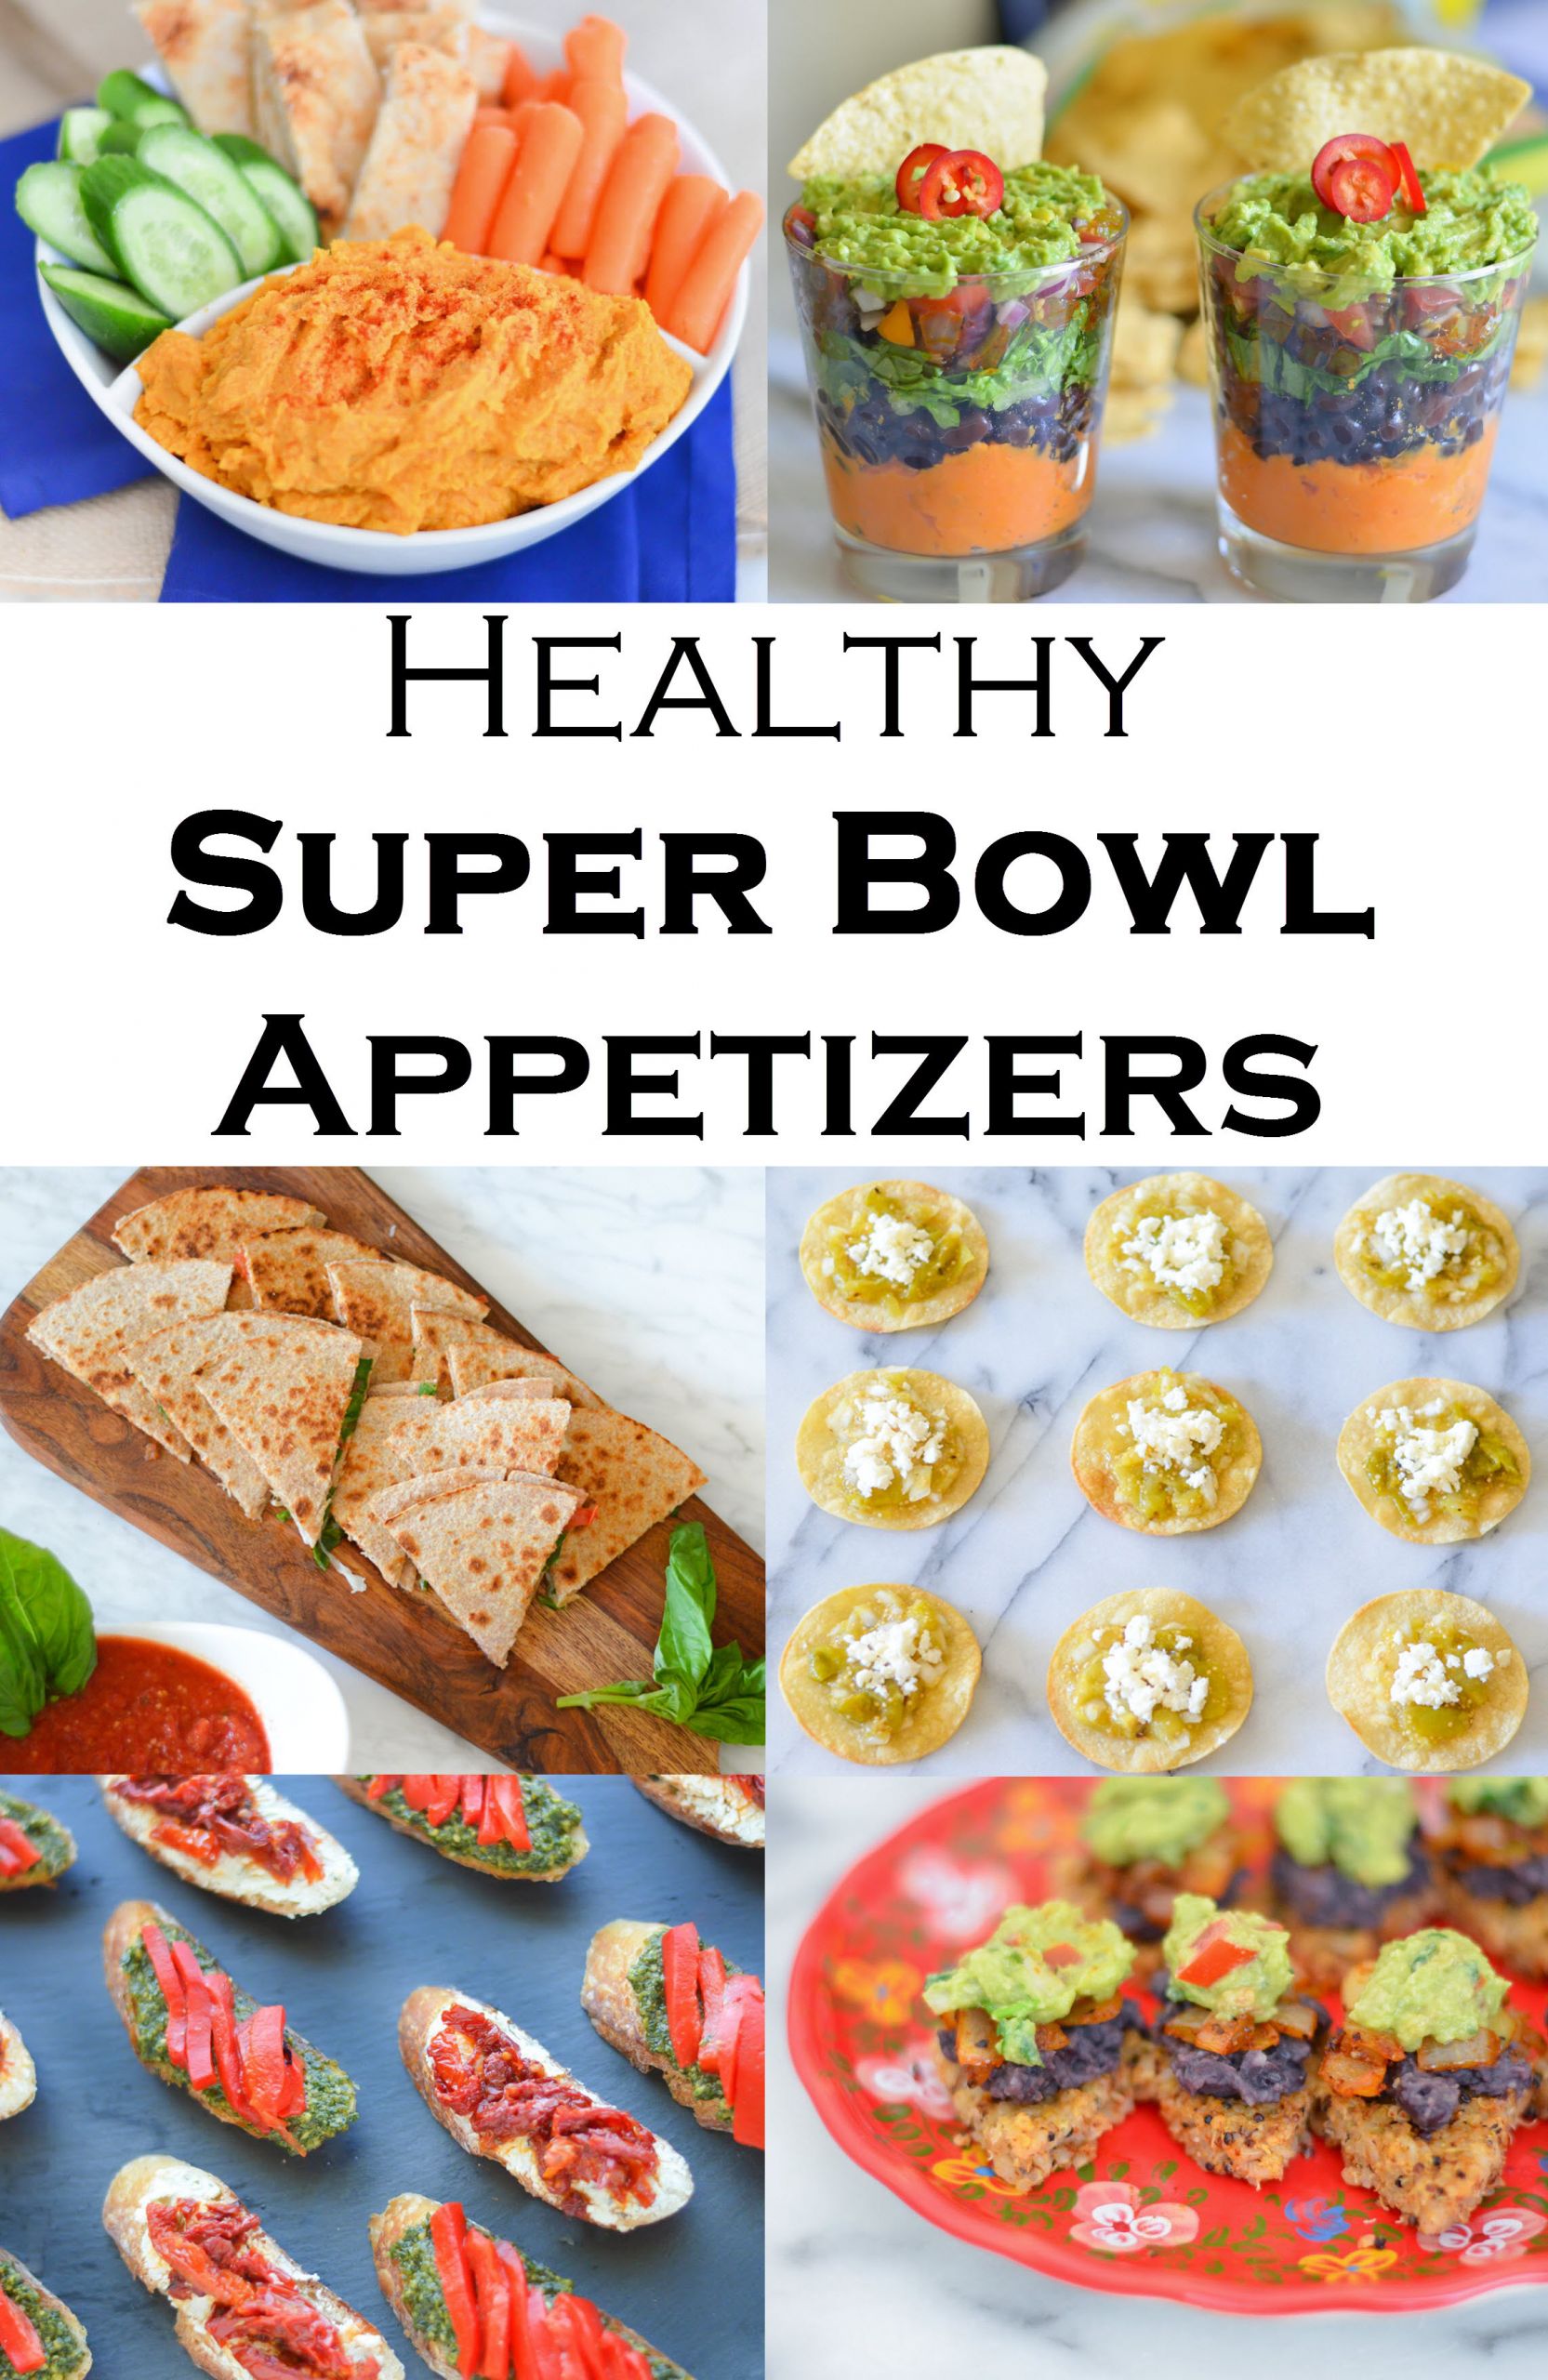 Vegetarian Super Bowl Recipes
 Healthy Super Bowl Recipes For Everyone